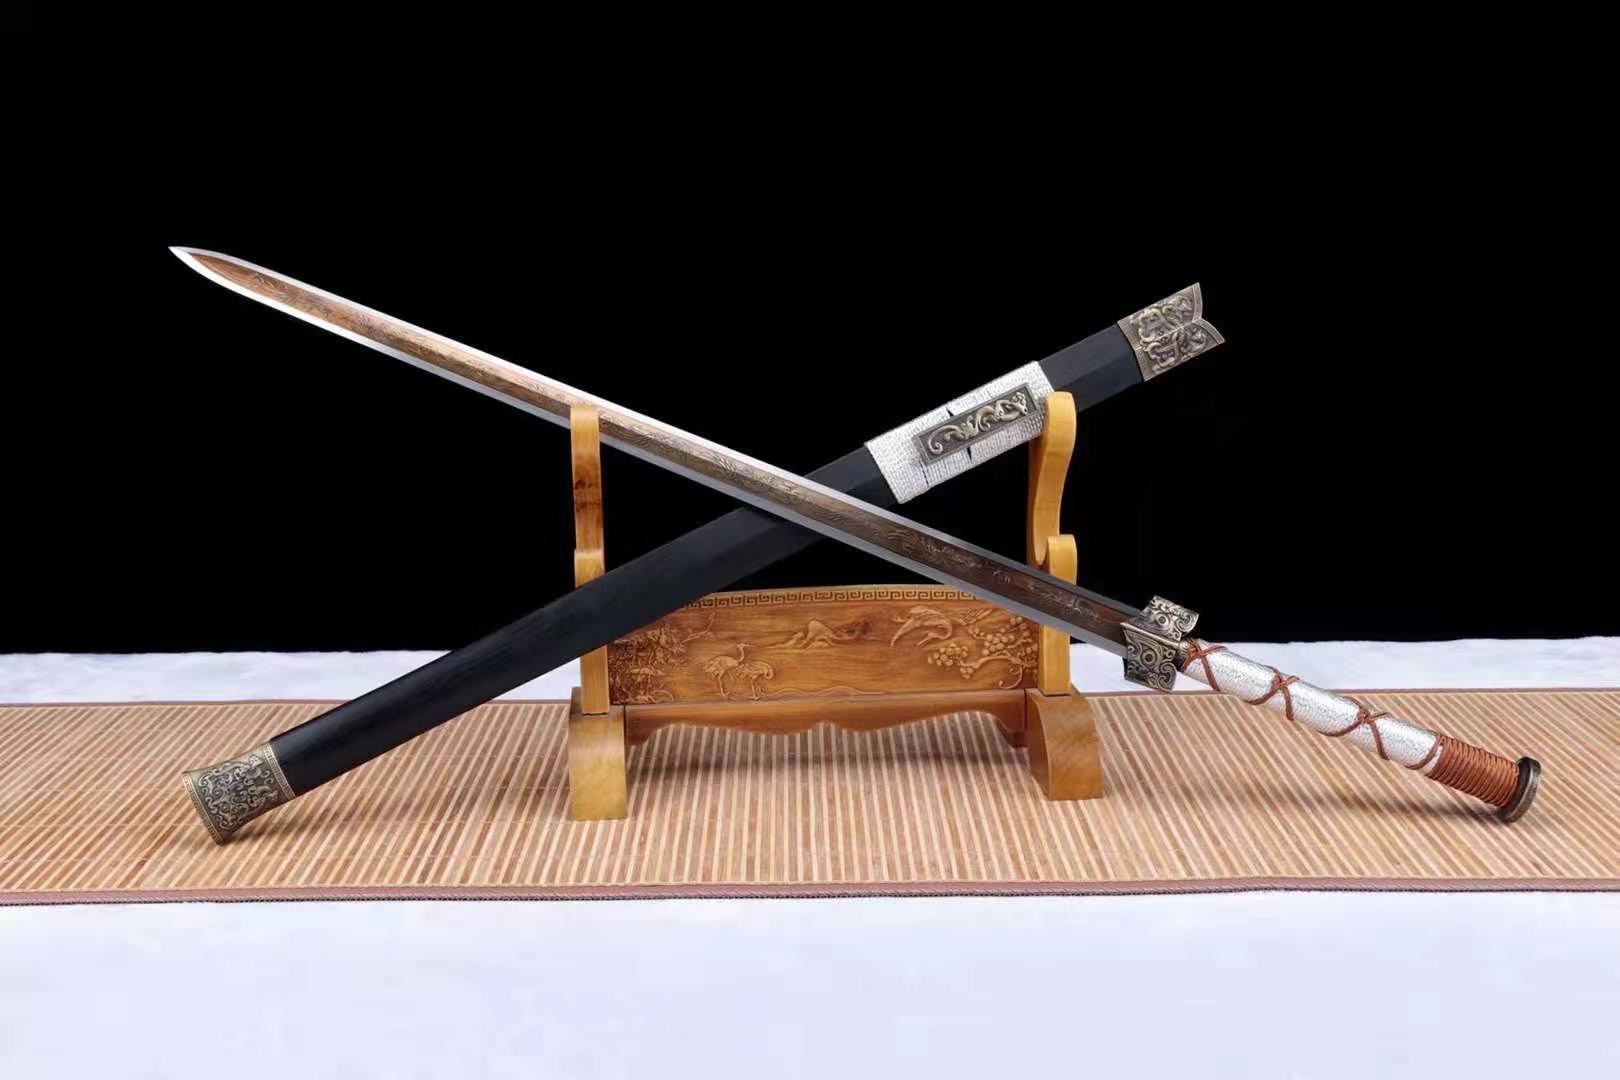 The Fenikkusu Saisei Handmade Chinese Sword Manganese Steel-Romance of Men